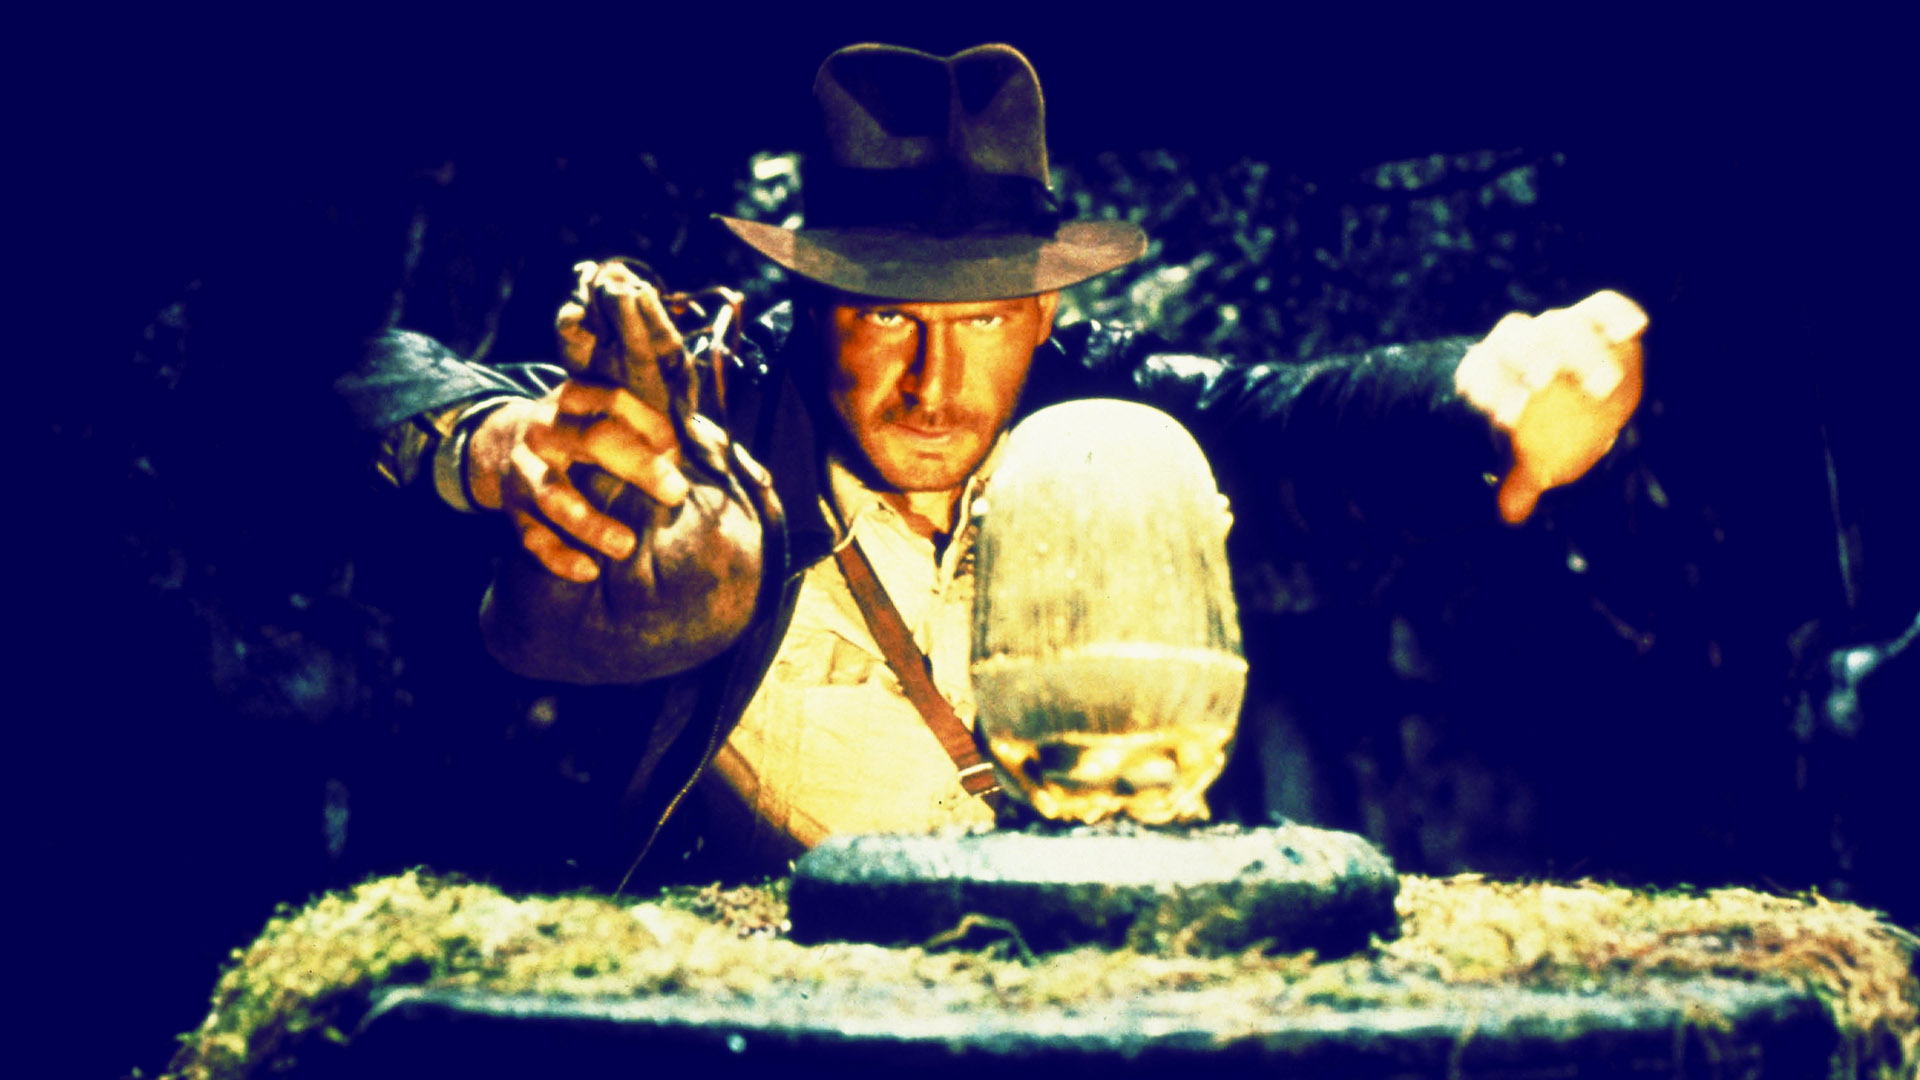 Indiana Jones volverá el 19 de julio de 2019 Son los ochenta, siguen volviendo